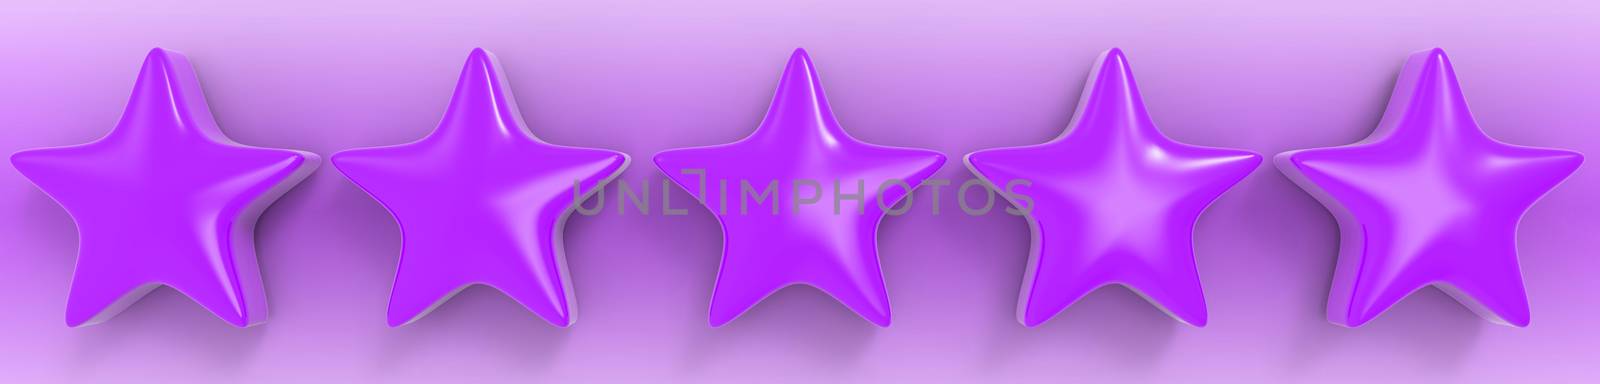 3d five violet star on color background. Render and illustration of golden star for premium